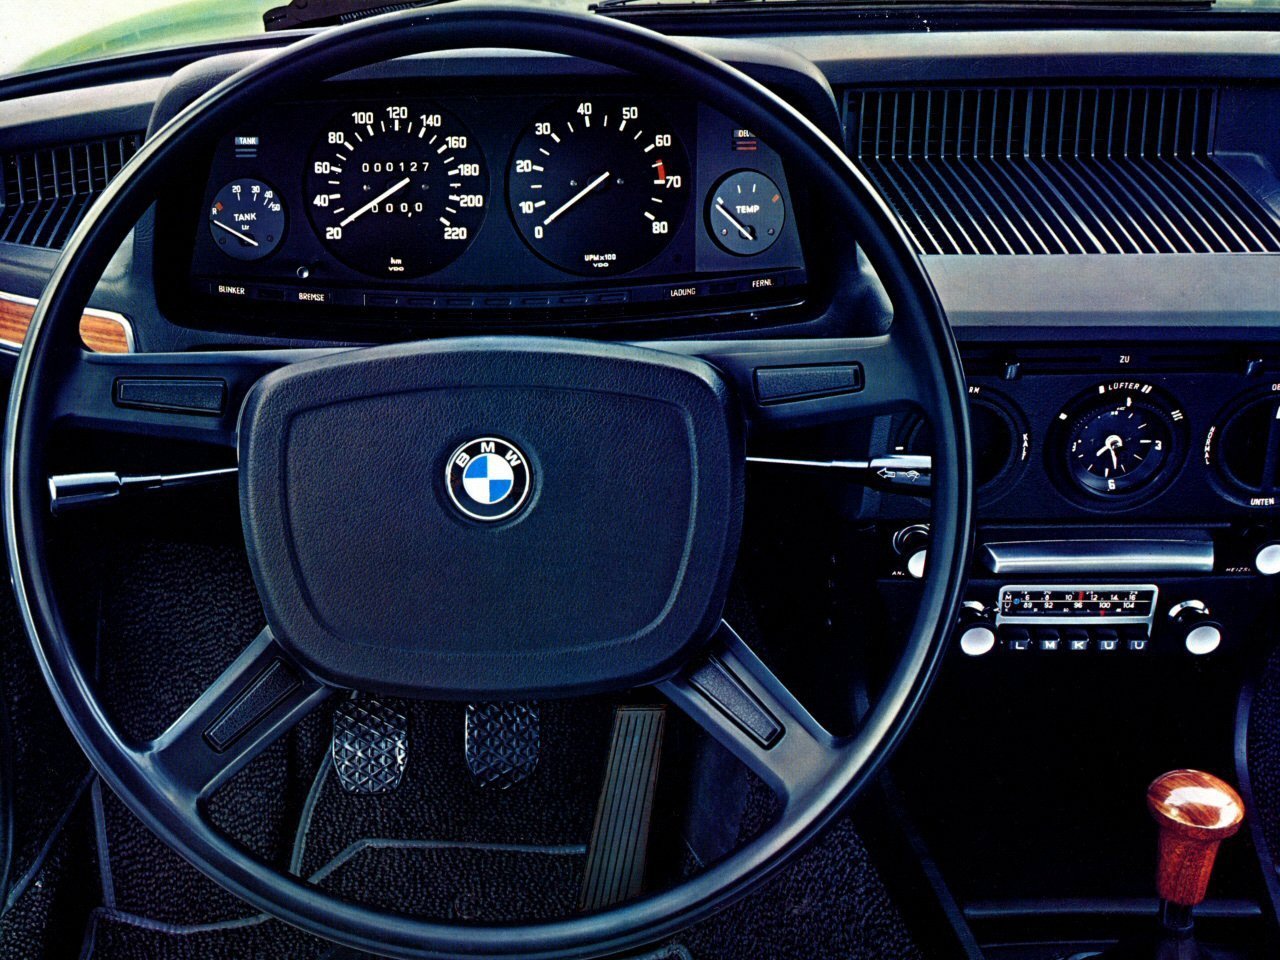 седан BMW 5er 1972 - 1976г выпуска модификация 1.8 MT (102 л.с.)